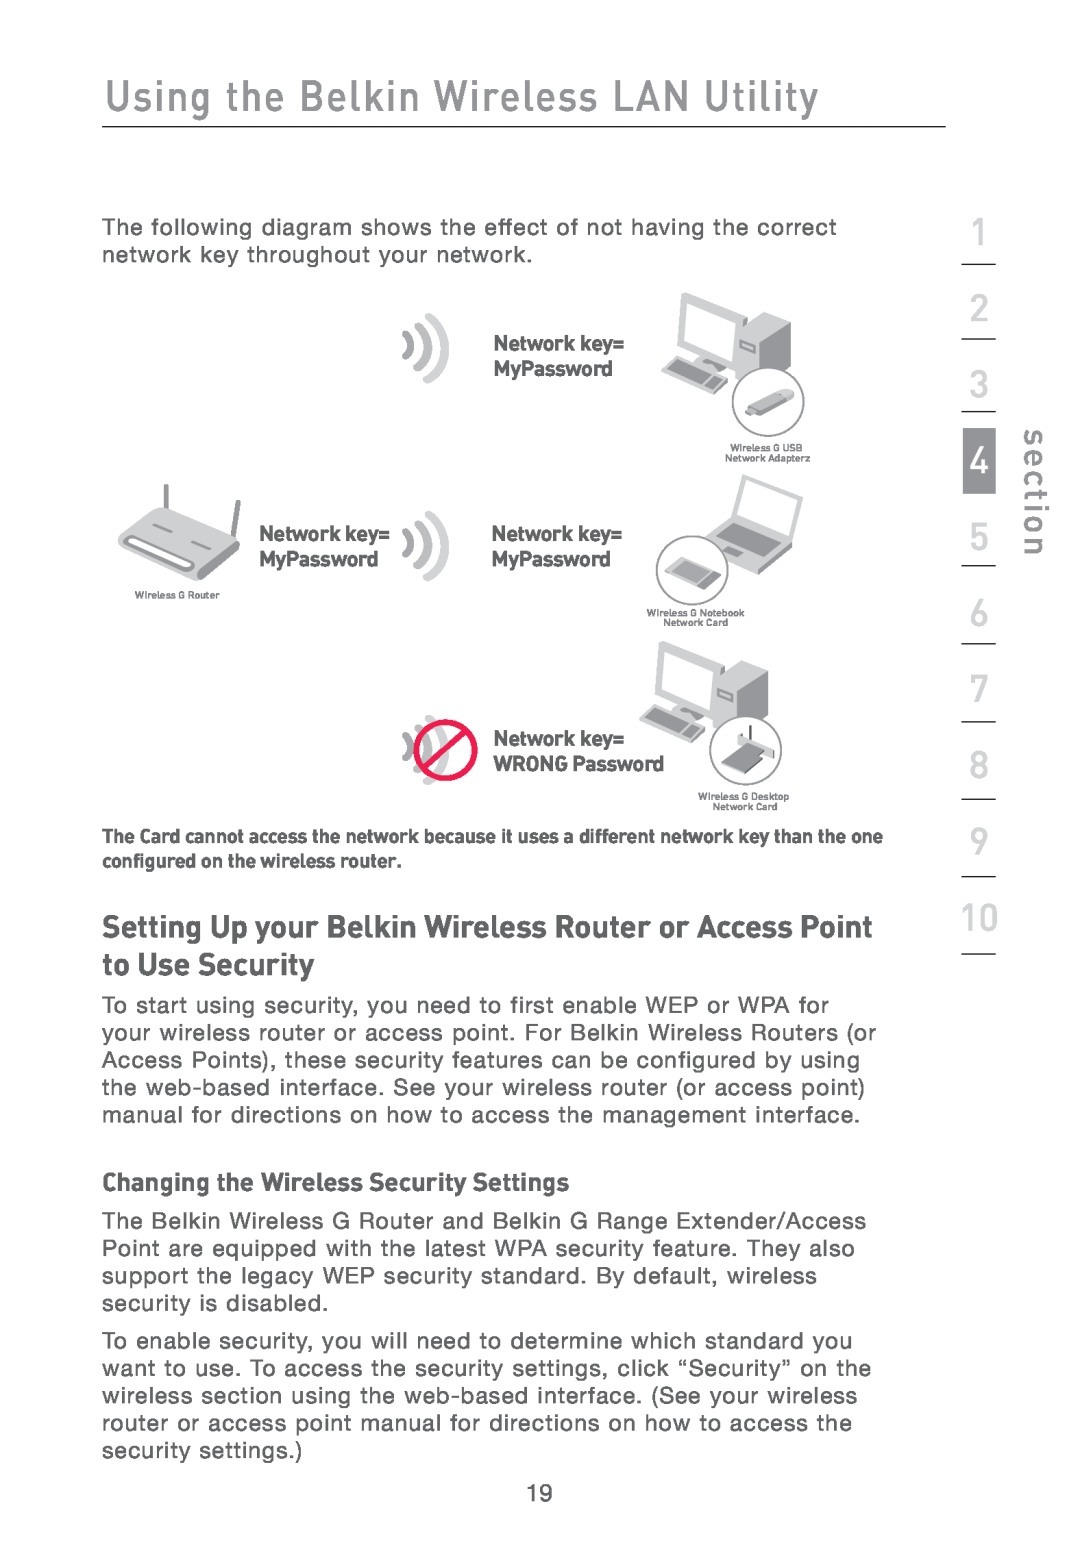 Belkin F5D7011 manual Changing the Wireless Security Settings, Using the Belkin Wireless LAN Utility, section, Network key= 